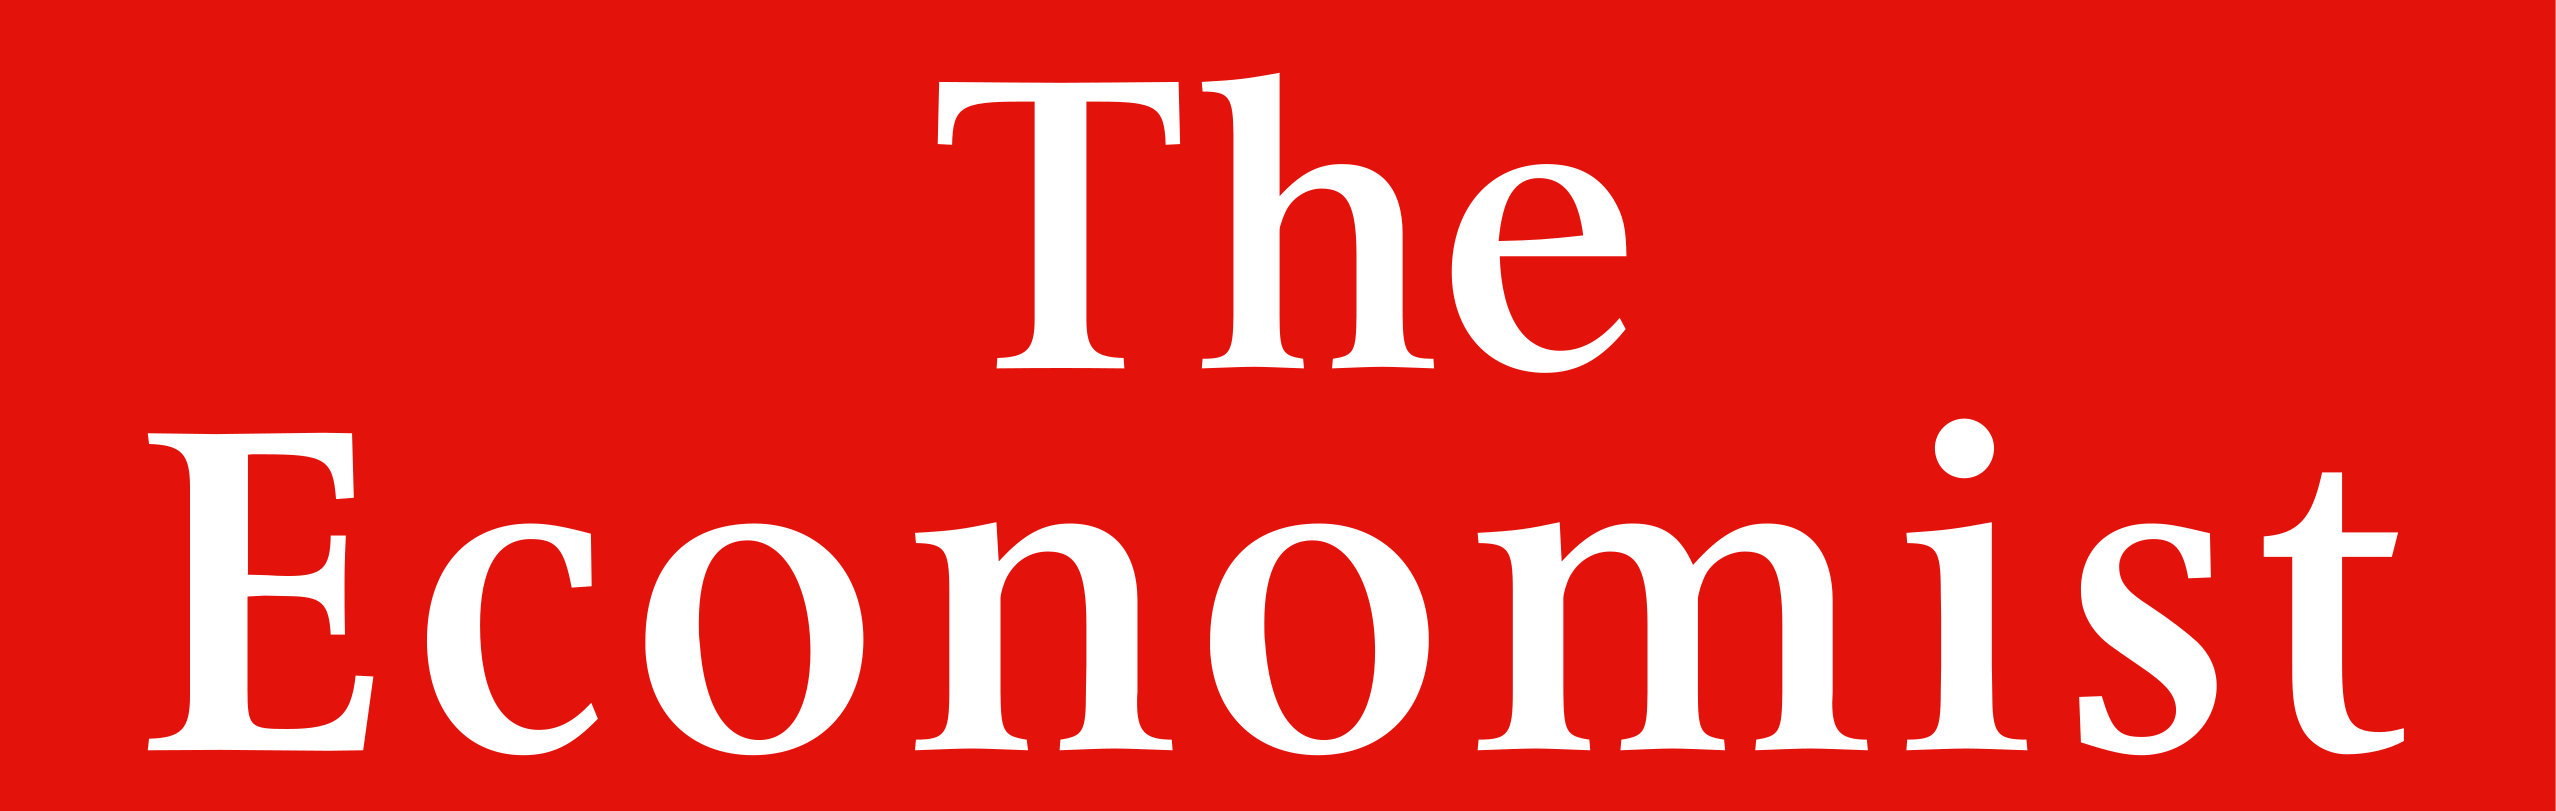 The Economist 1